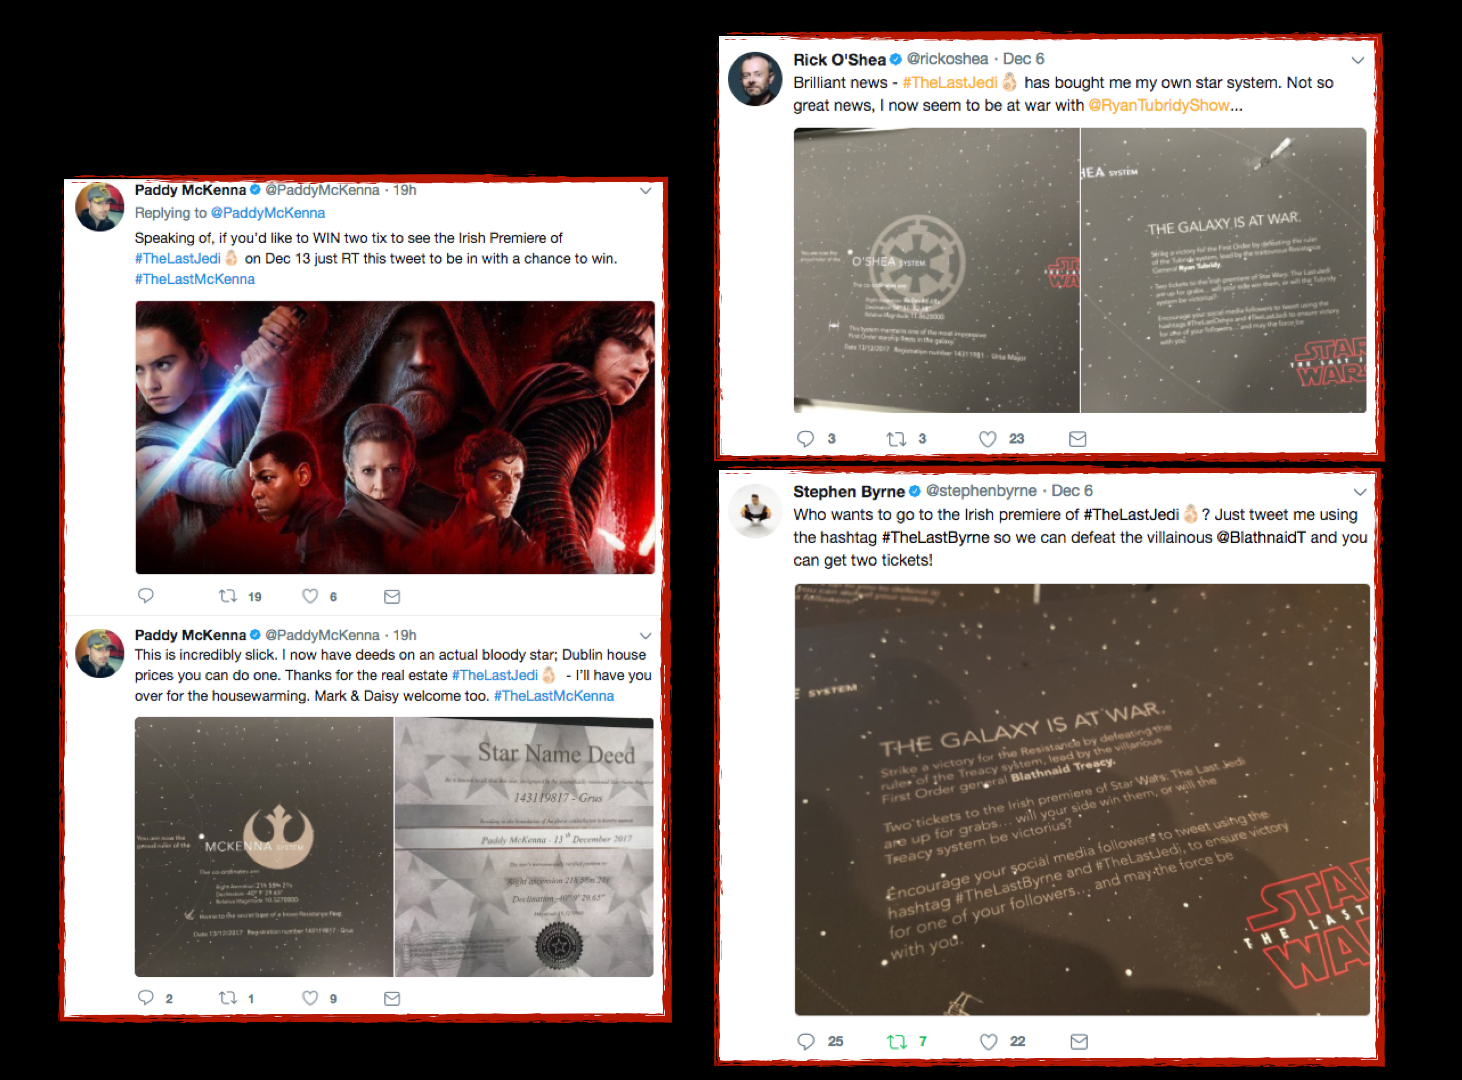 Star Wars Invites - Twitter Wars rage on